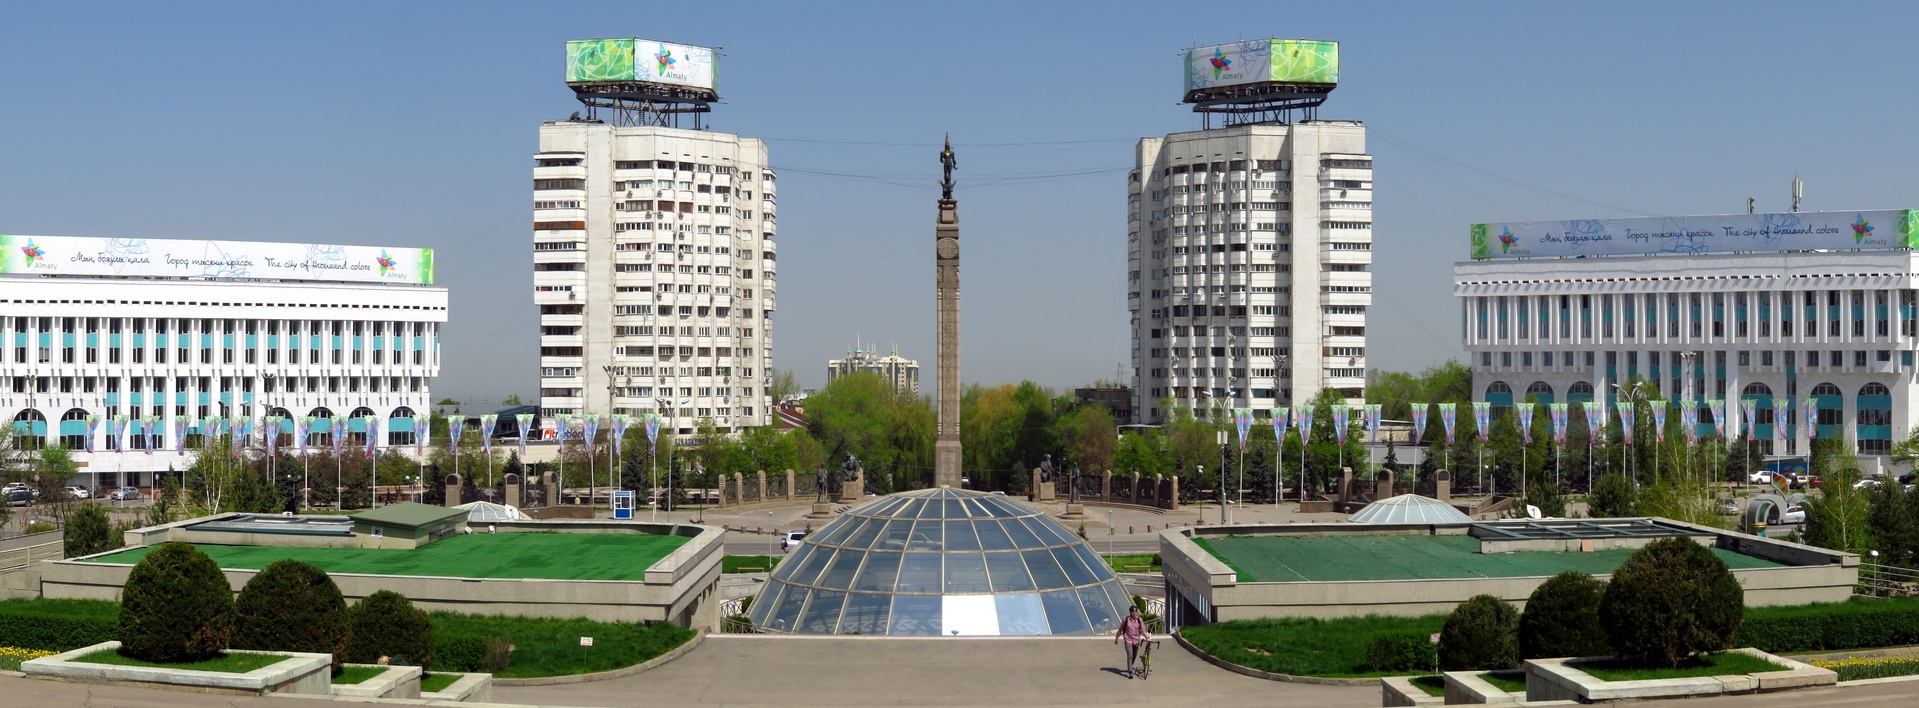 Republic Square